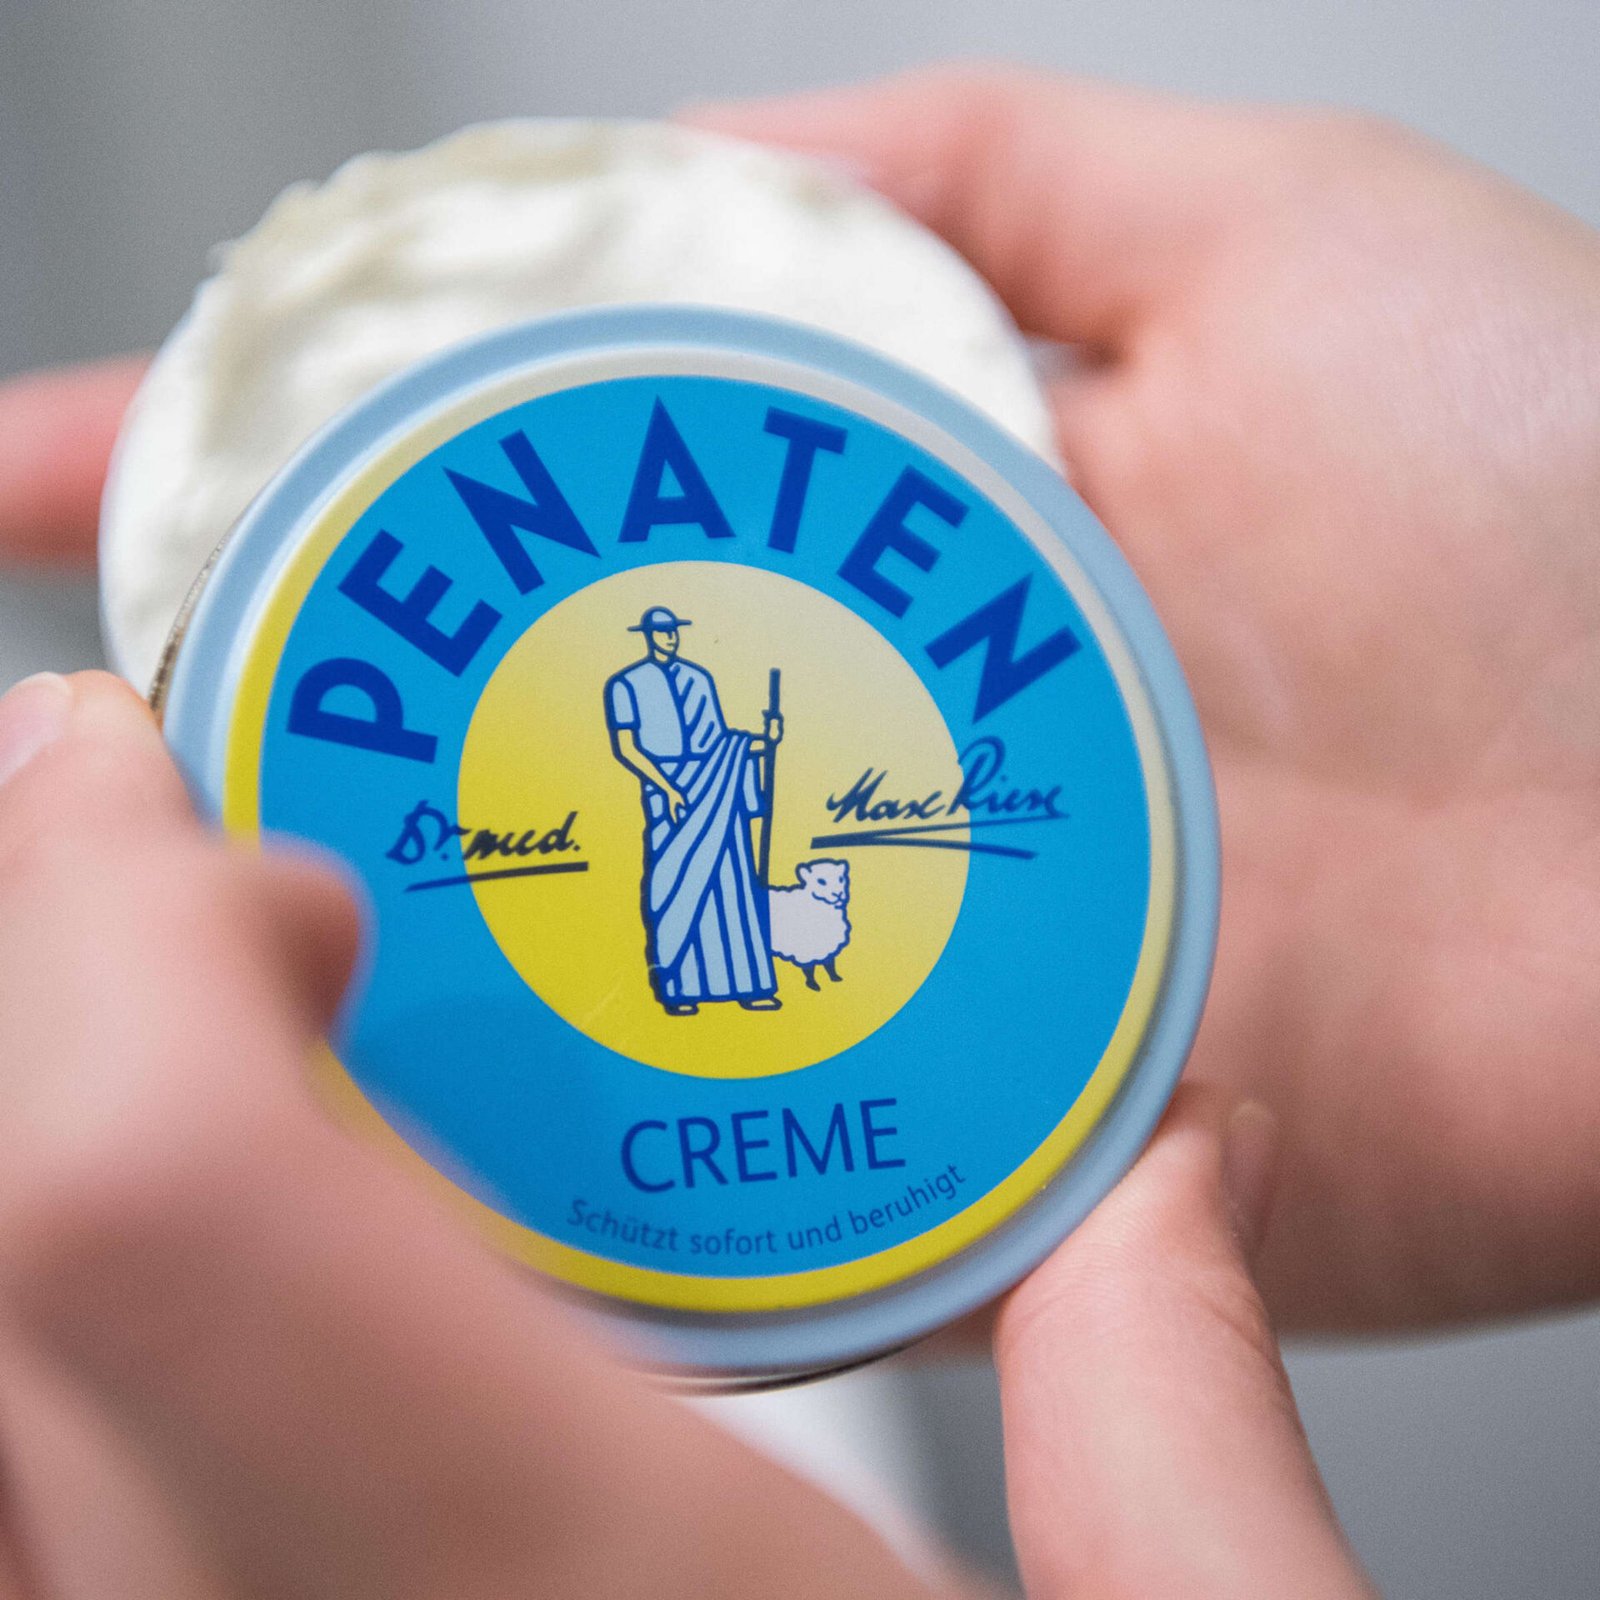 Penaten Creme: Eine vertrauenswürdige deutsche Marke seit Generationen